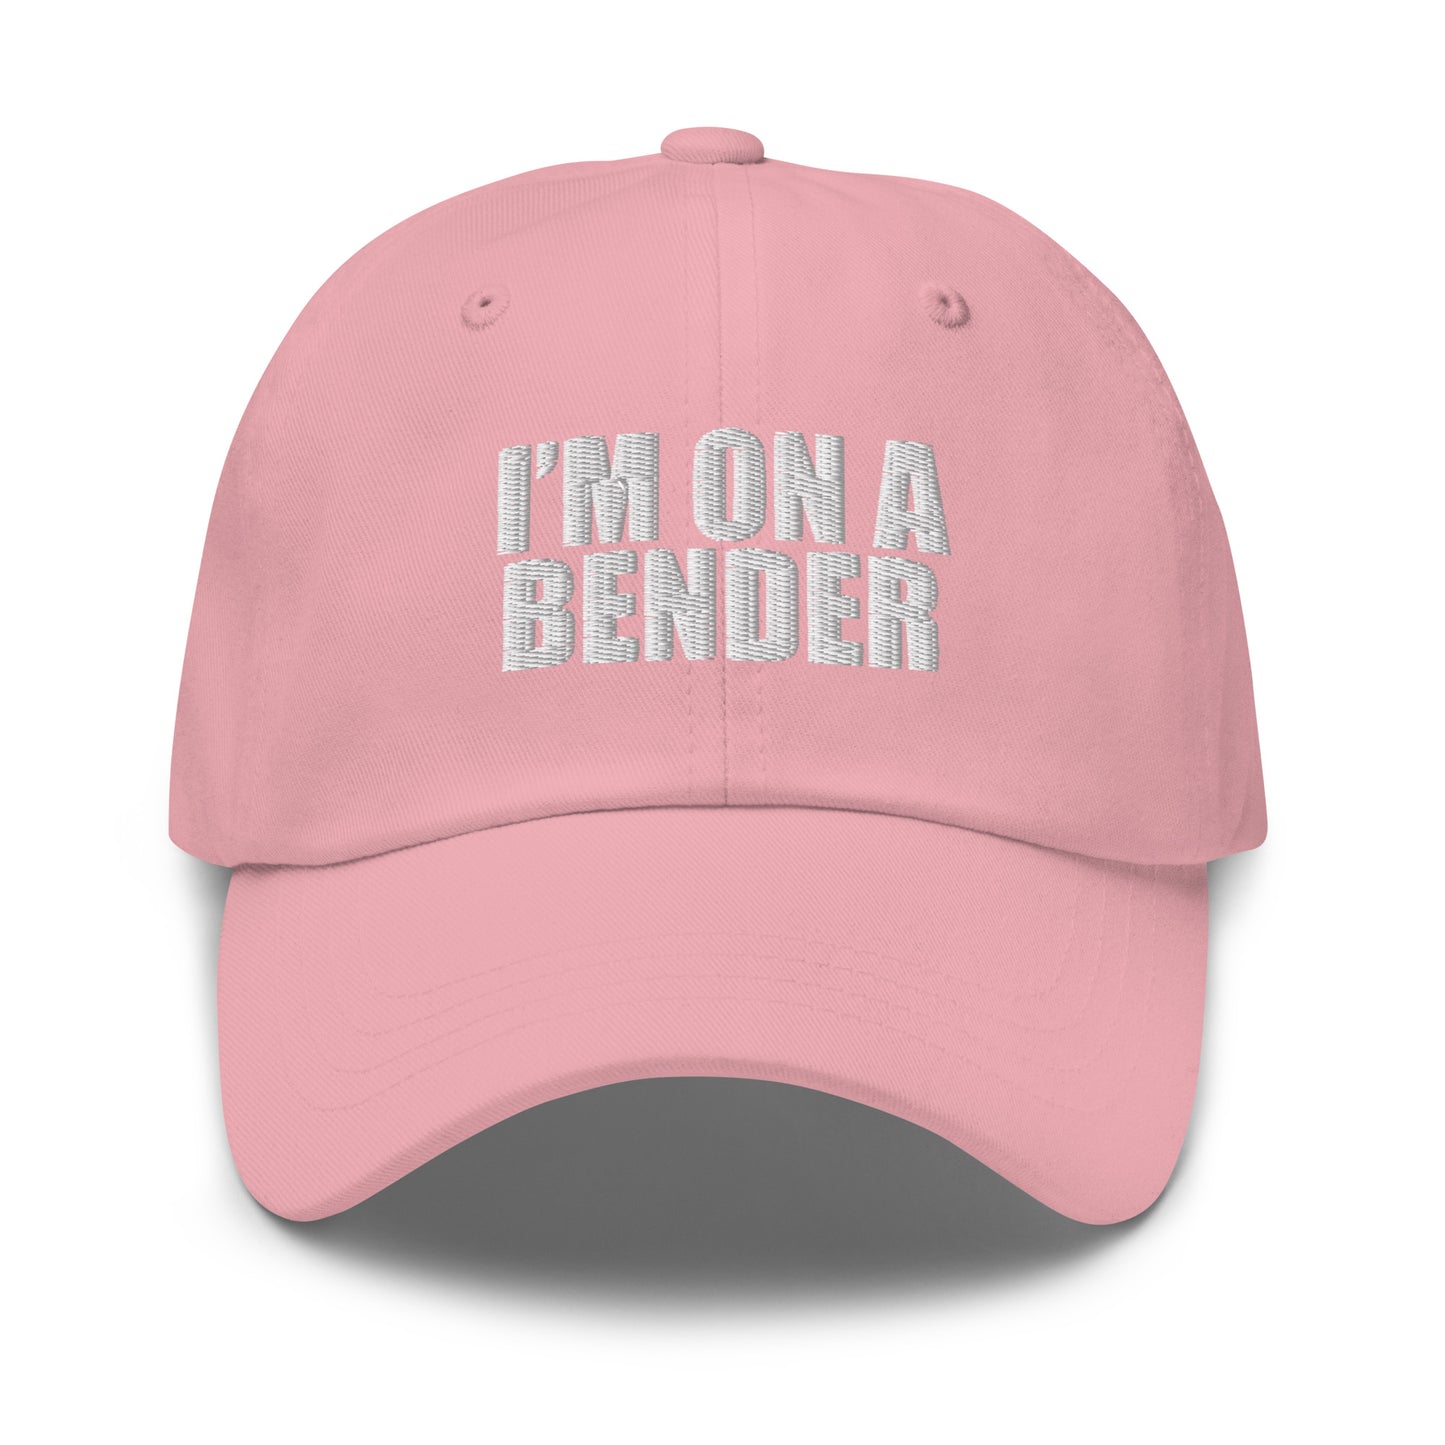 Bender - Dad hat